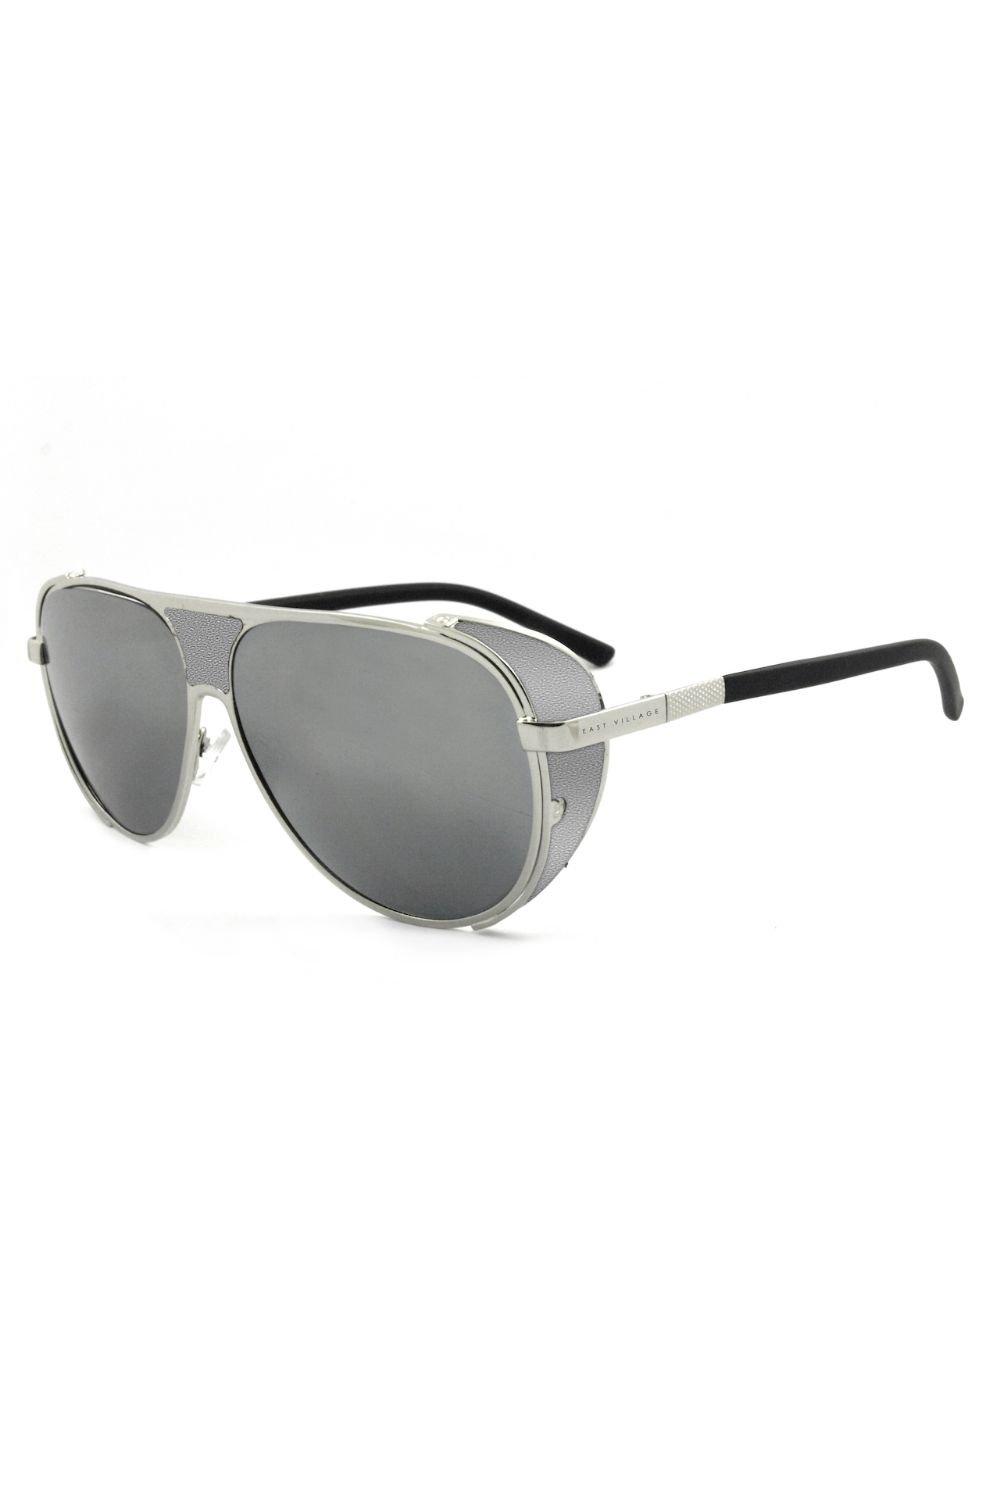 Солнцезащитные очки-авиаторы Jordan East Village, серебро